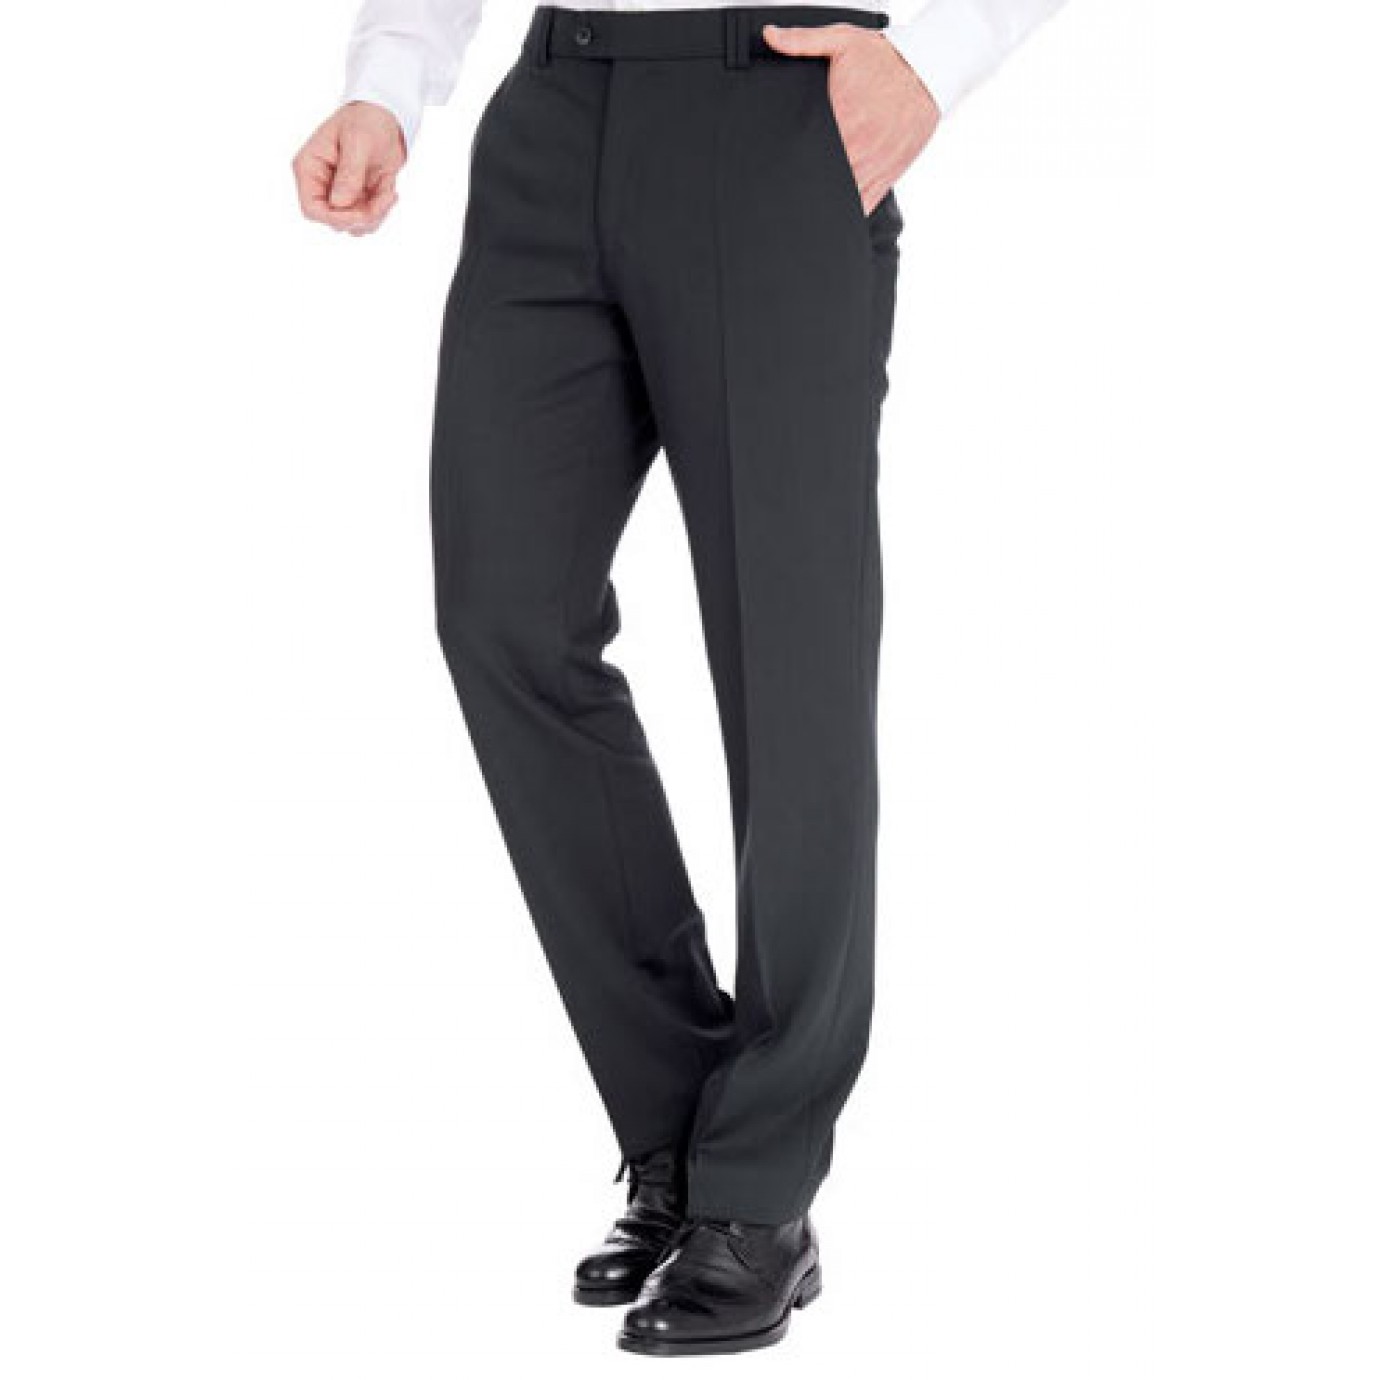 Классические мужские брюки Meyer (Мейер), модель Bonn 6-303/99 черные.купить в Москве в интернет-магазине SHOP4BIG - цена, фото, описание